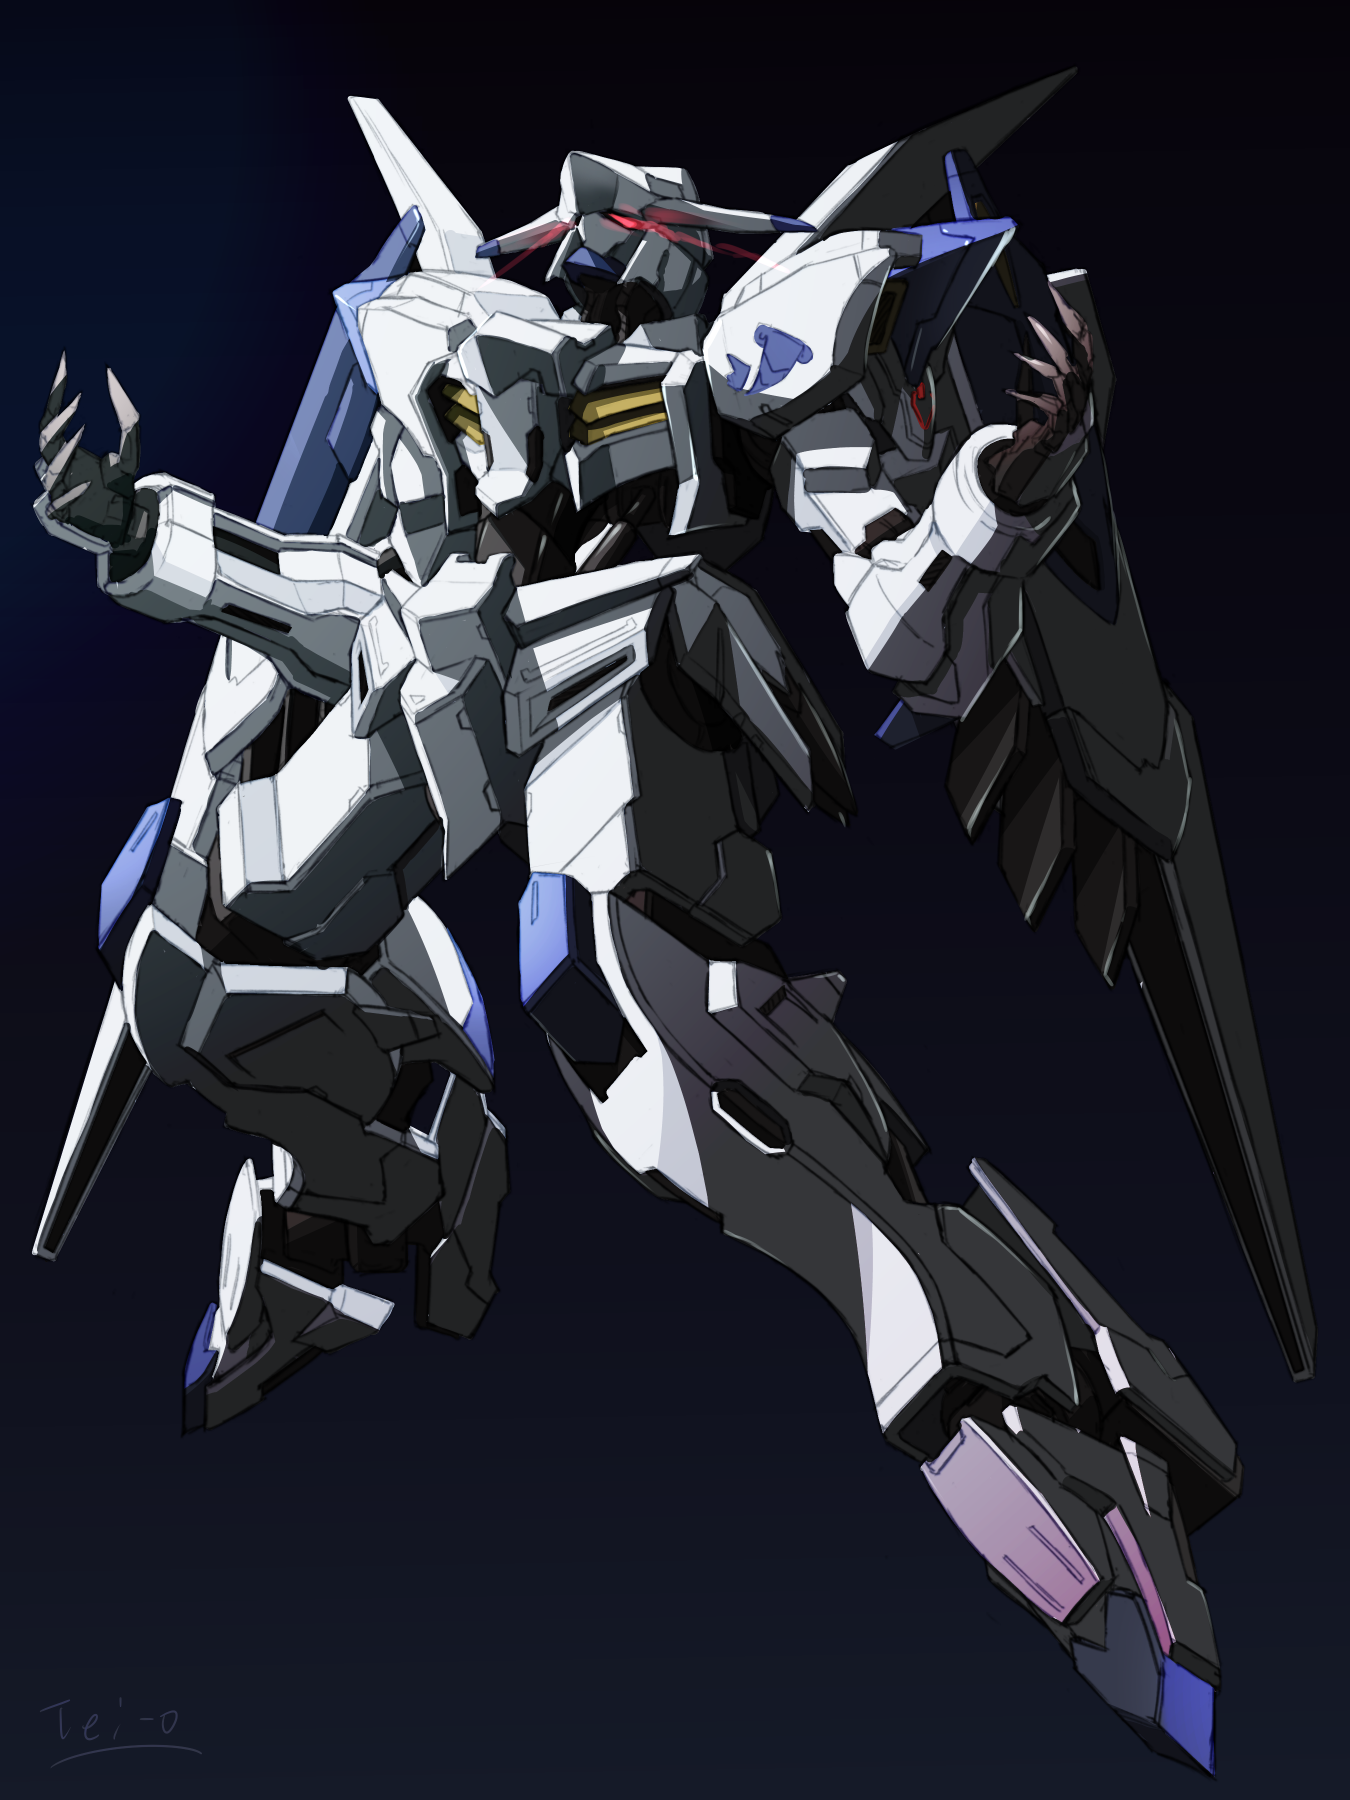 Anime 1350x1800 Mobile Suit Gundam: Iron-Blooded Orphans Gundam Bael anime mechs Super Robot Taisen artwork digital art fan art